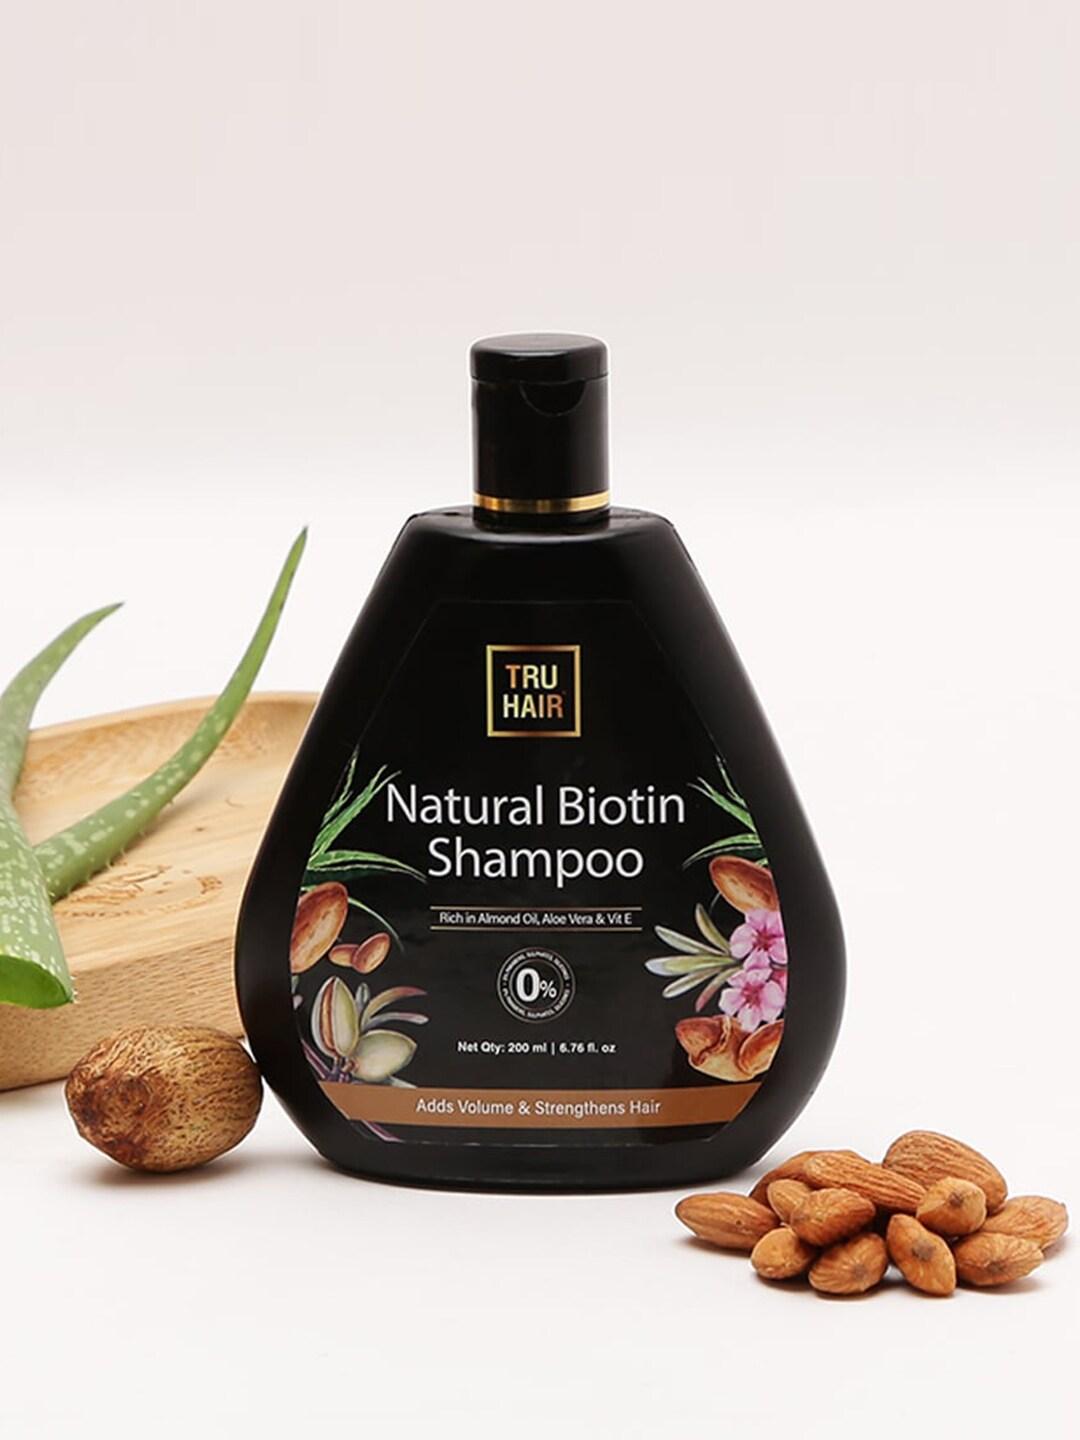 TRU HAIR Biotin Shampoo for Hair Growth with Aloe Vera & Vitamin E - 200ml